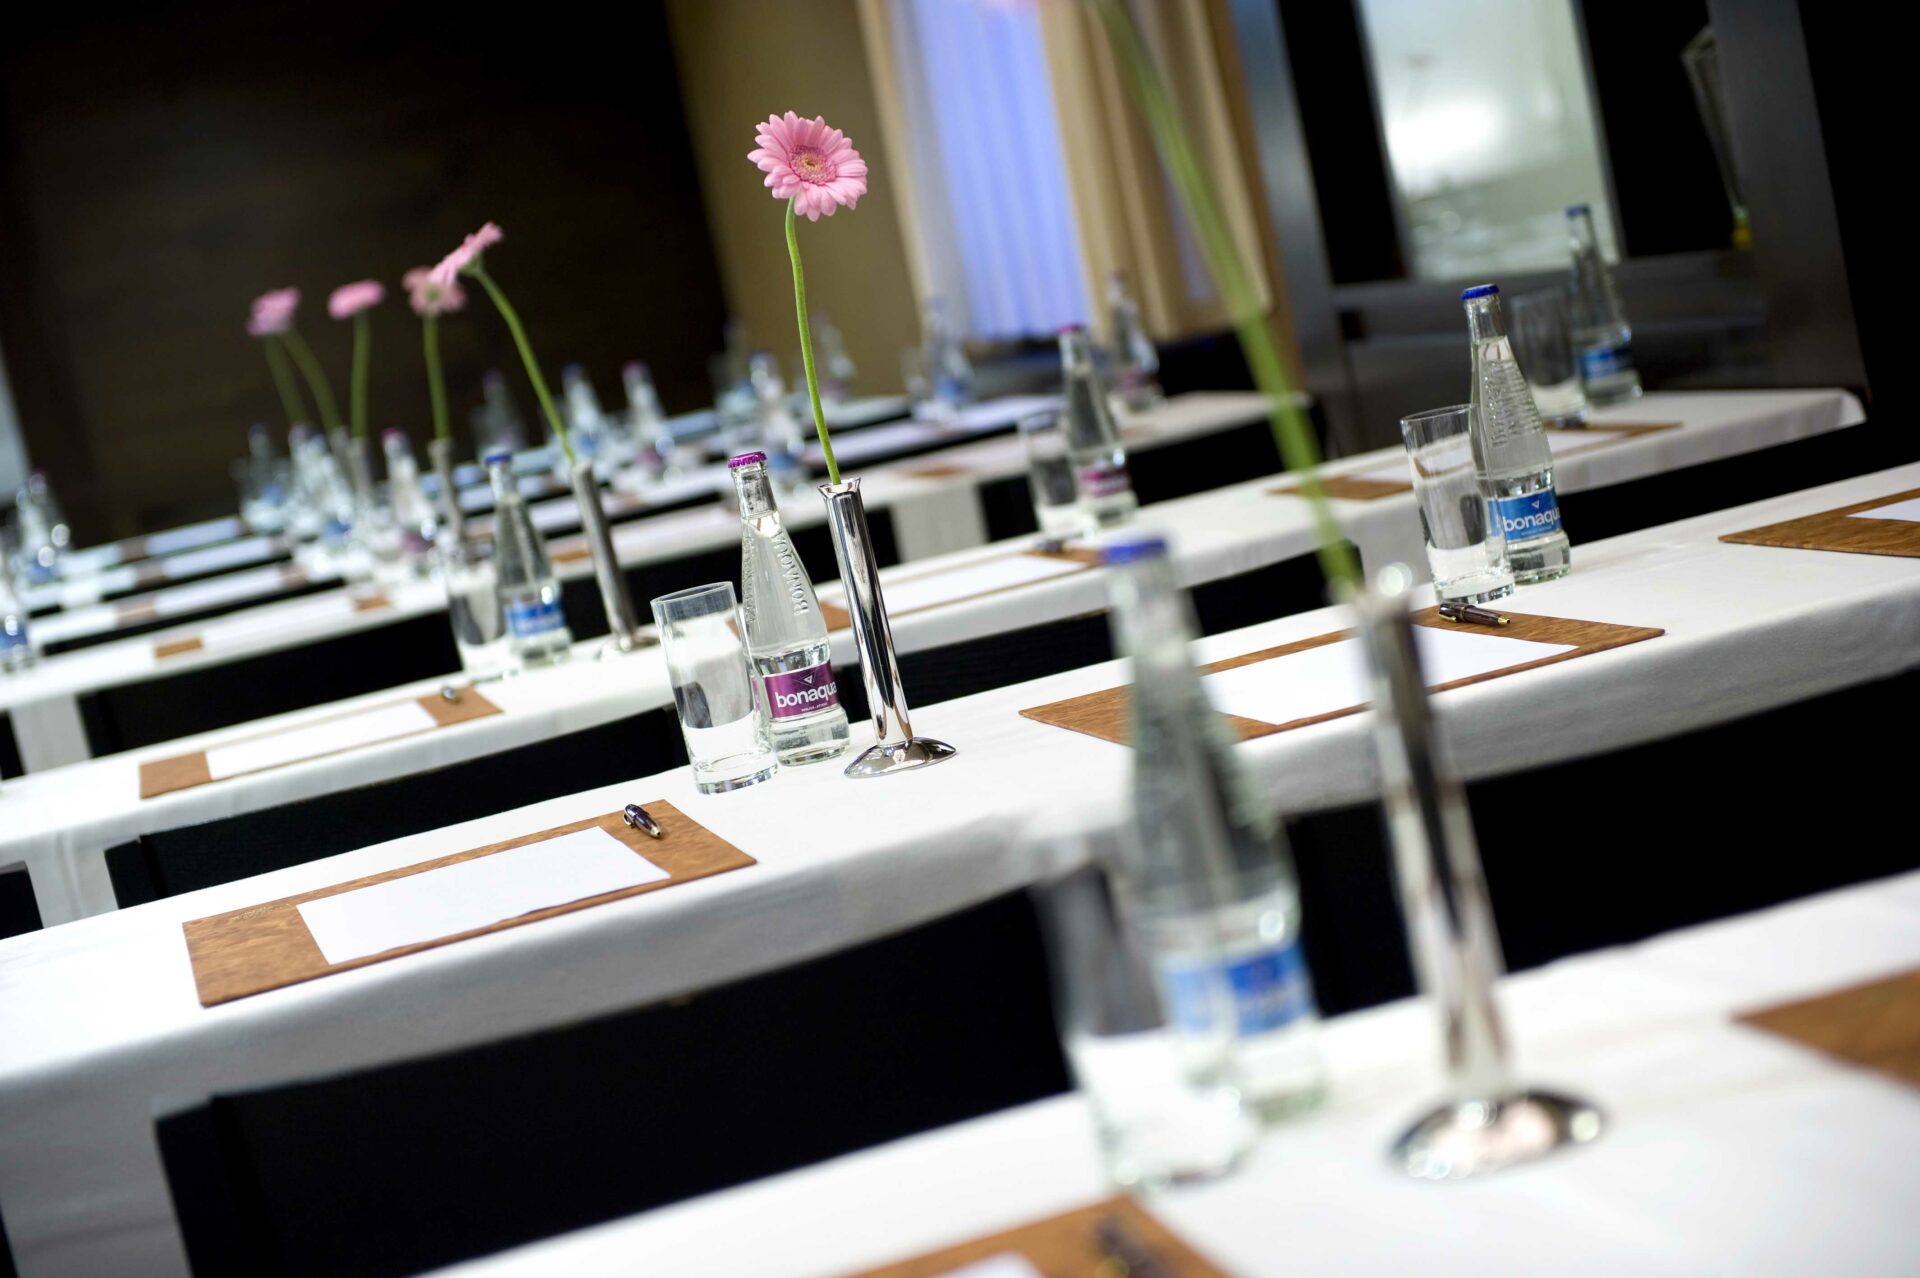 konferenčné priestory - stoly s kvetami a minerálkou